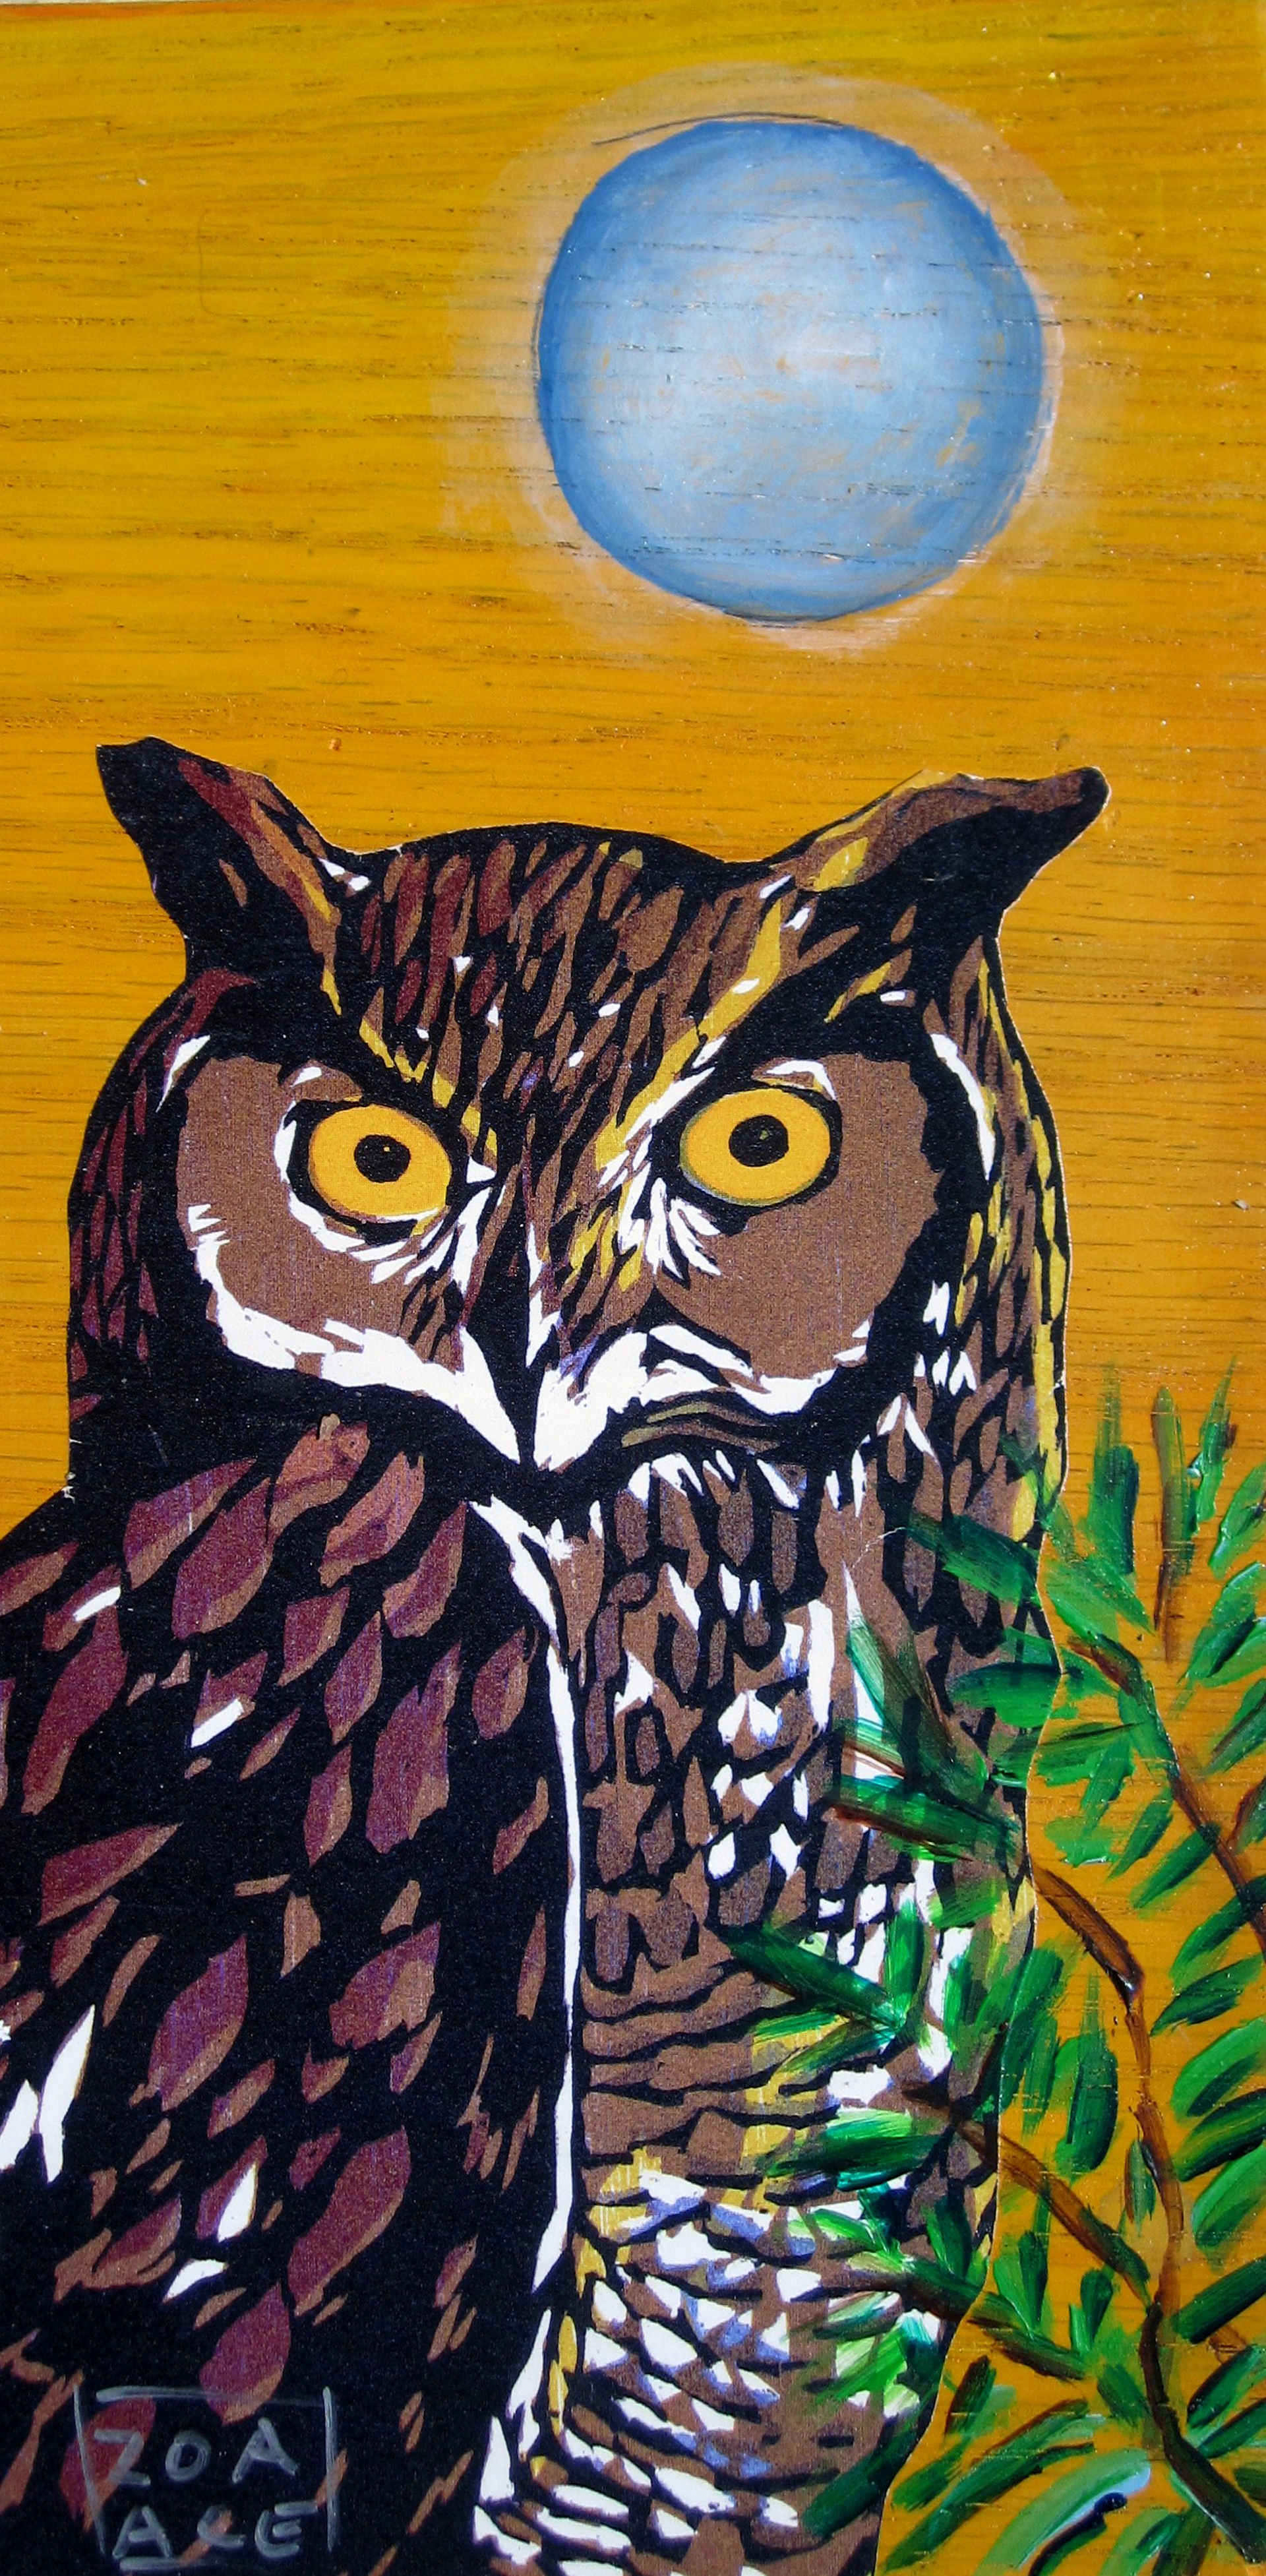 Night Owl by Zoa Ace